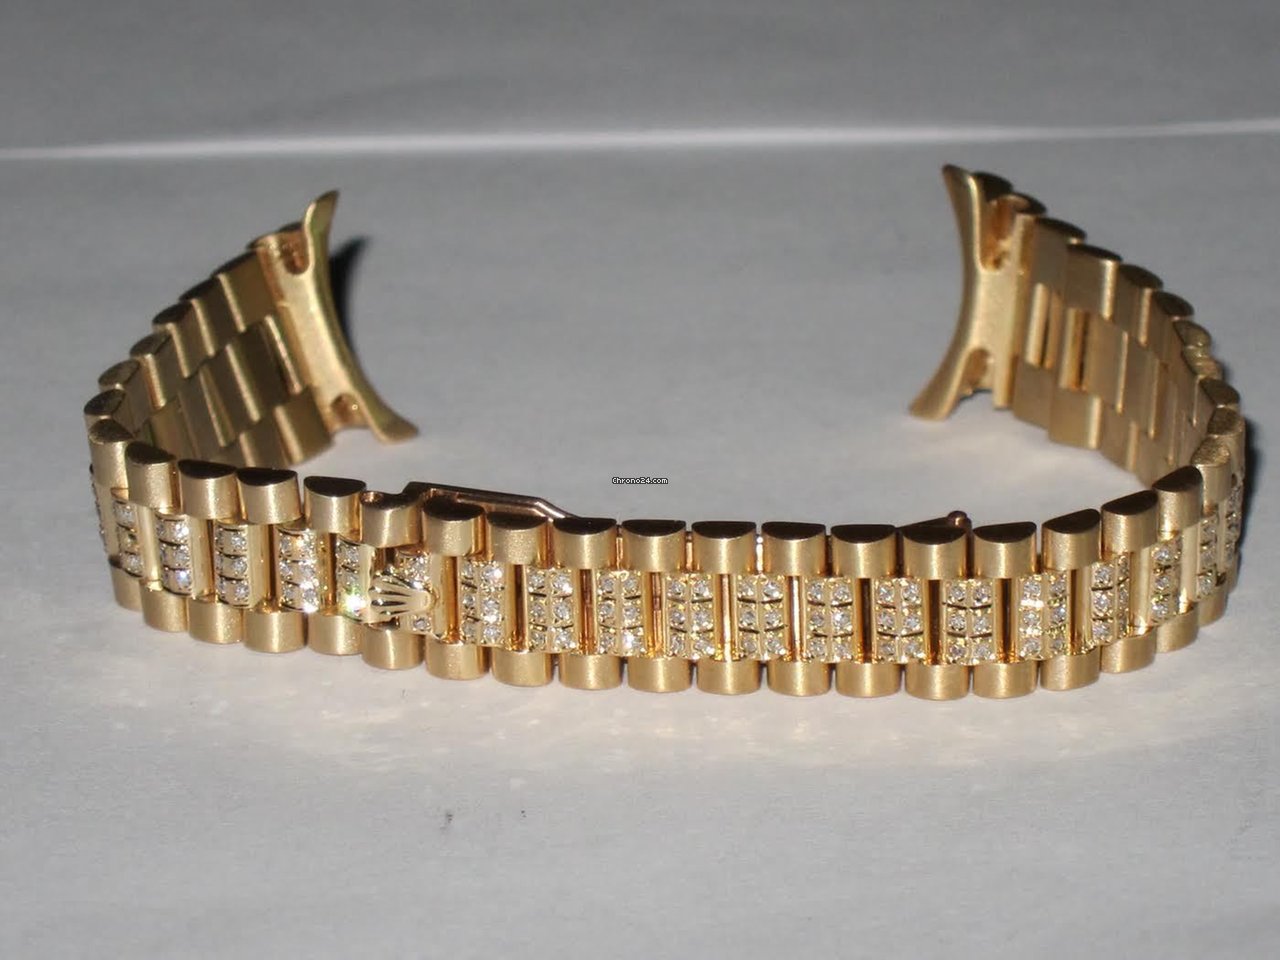 Rolex bracelet codes